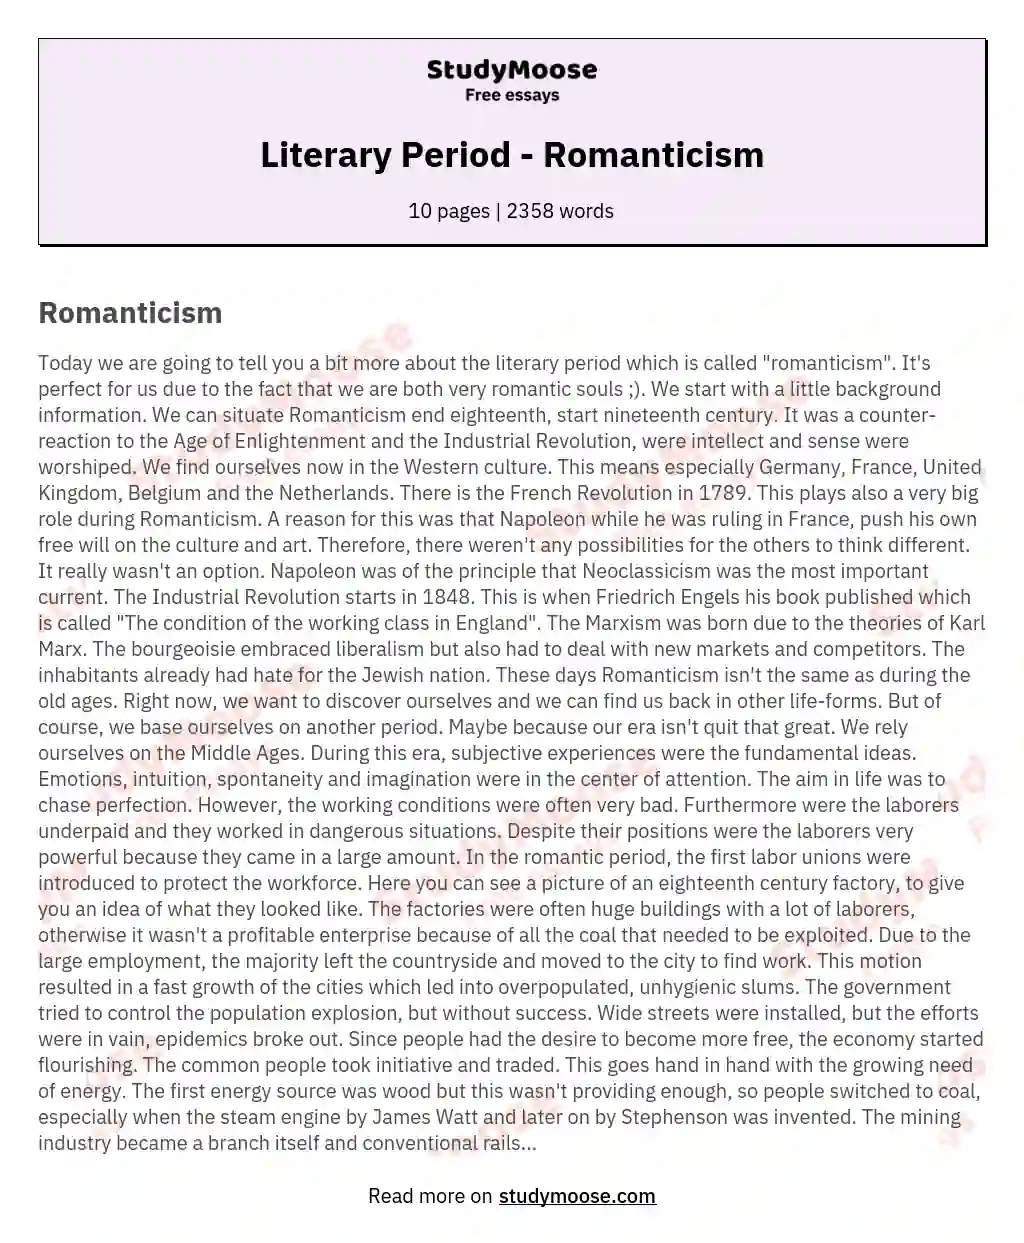 Literary Period - Romanticism essay